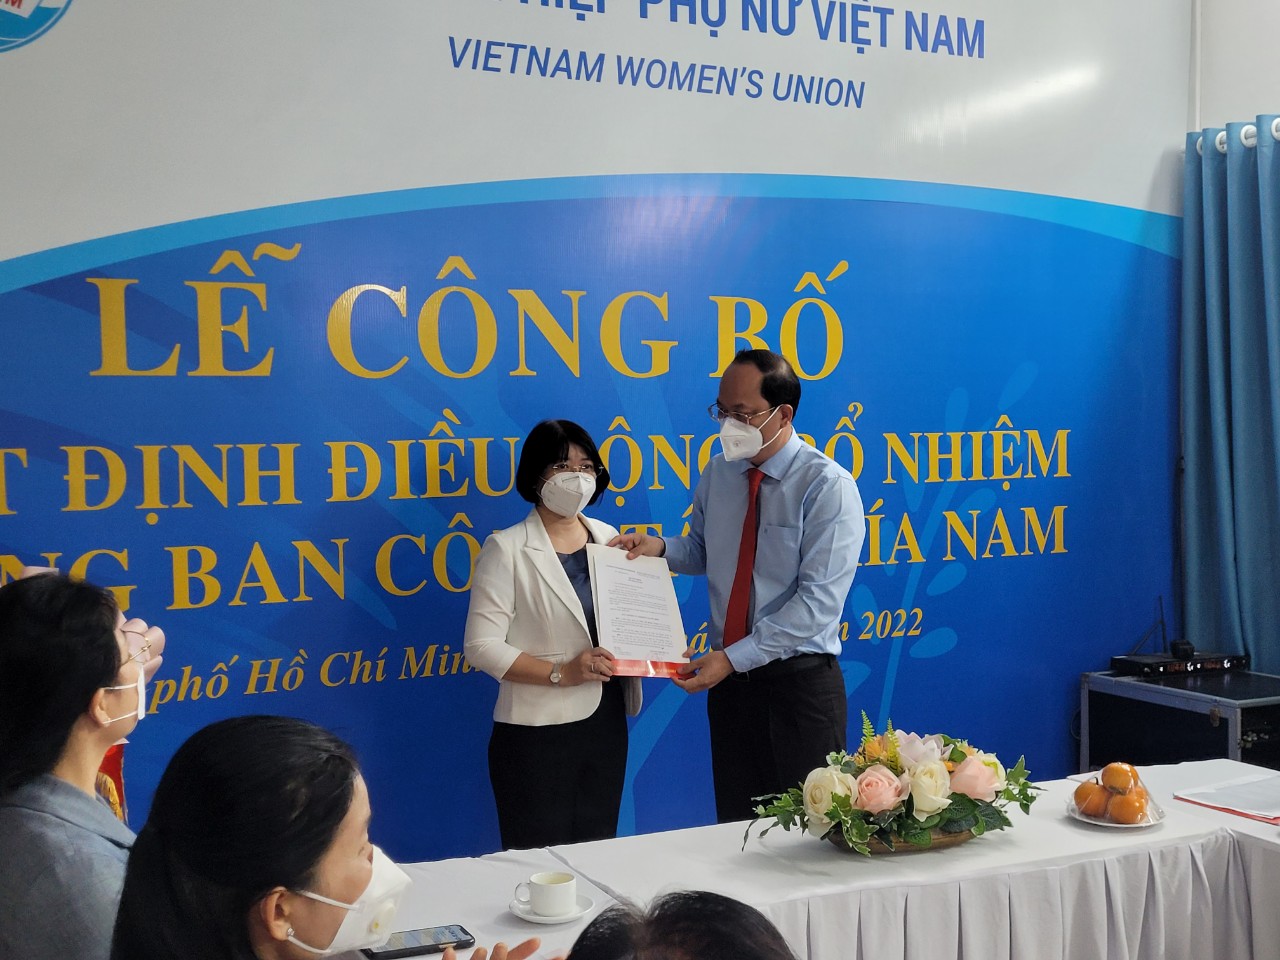 Ông Nguyễn Hồ Hải - Phó Bí thư Thành ủy TP. HCM trao quyết định điều động cán bộ cho bà Trần Thị Huyền Thanh